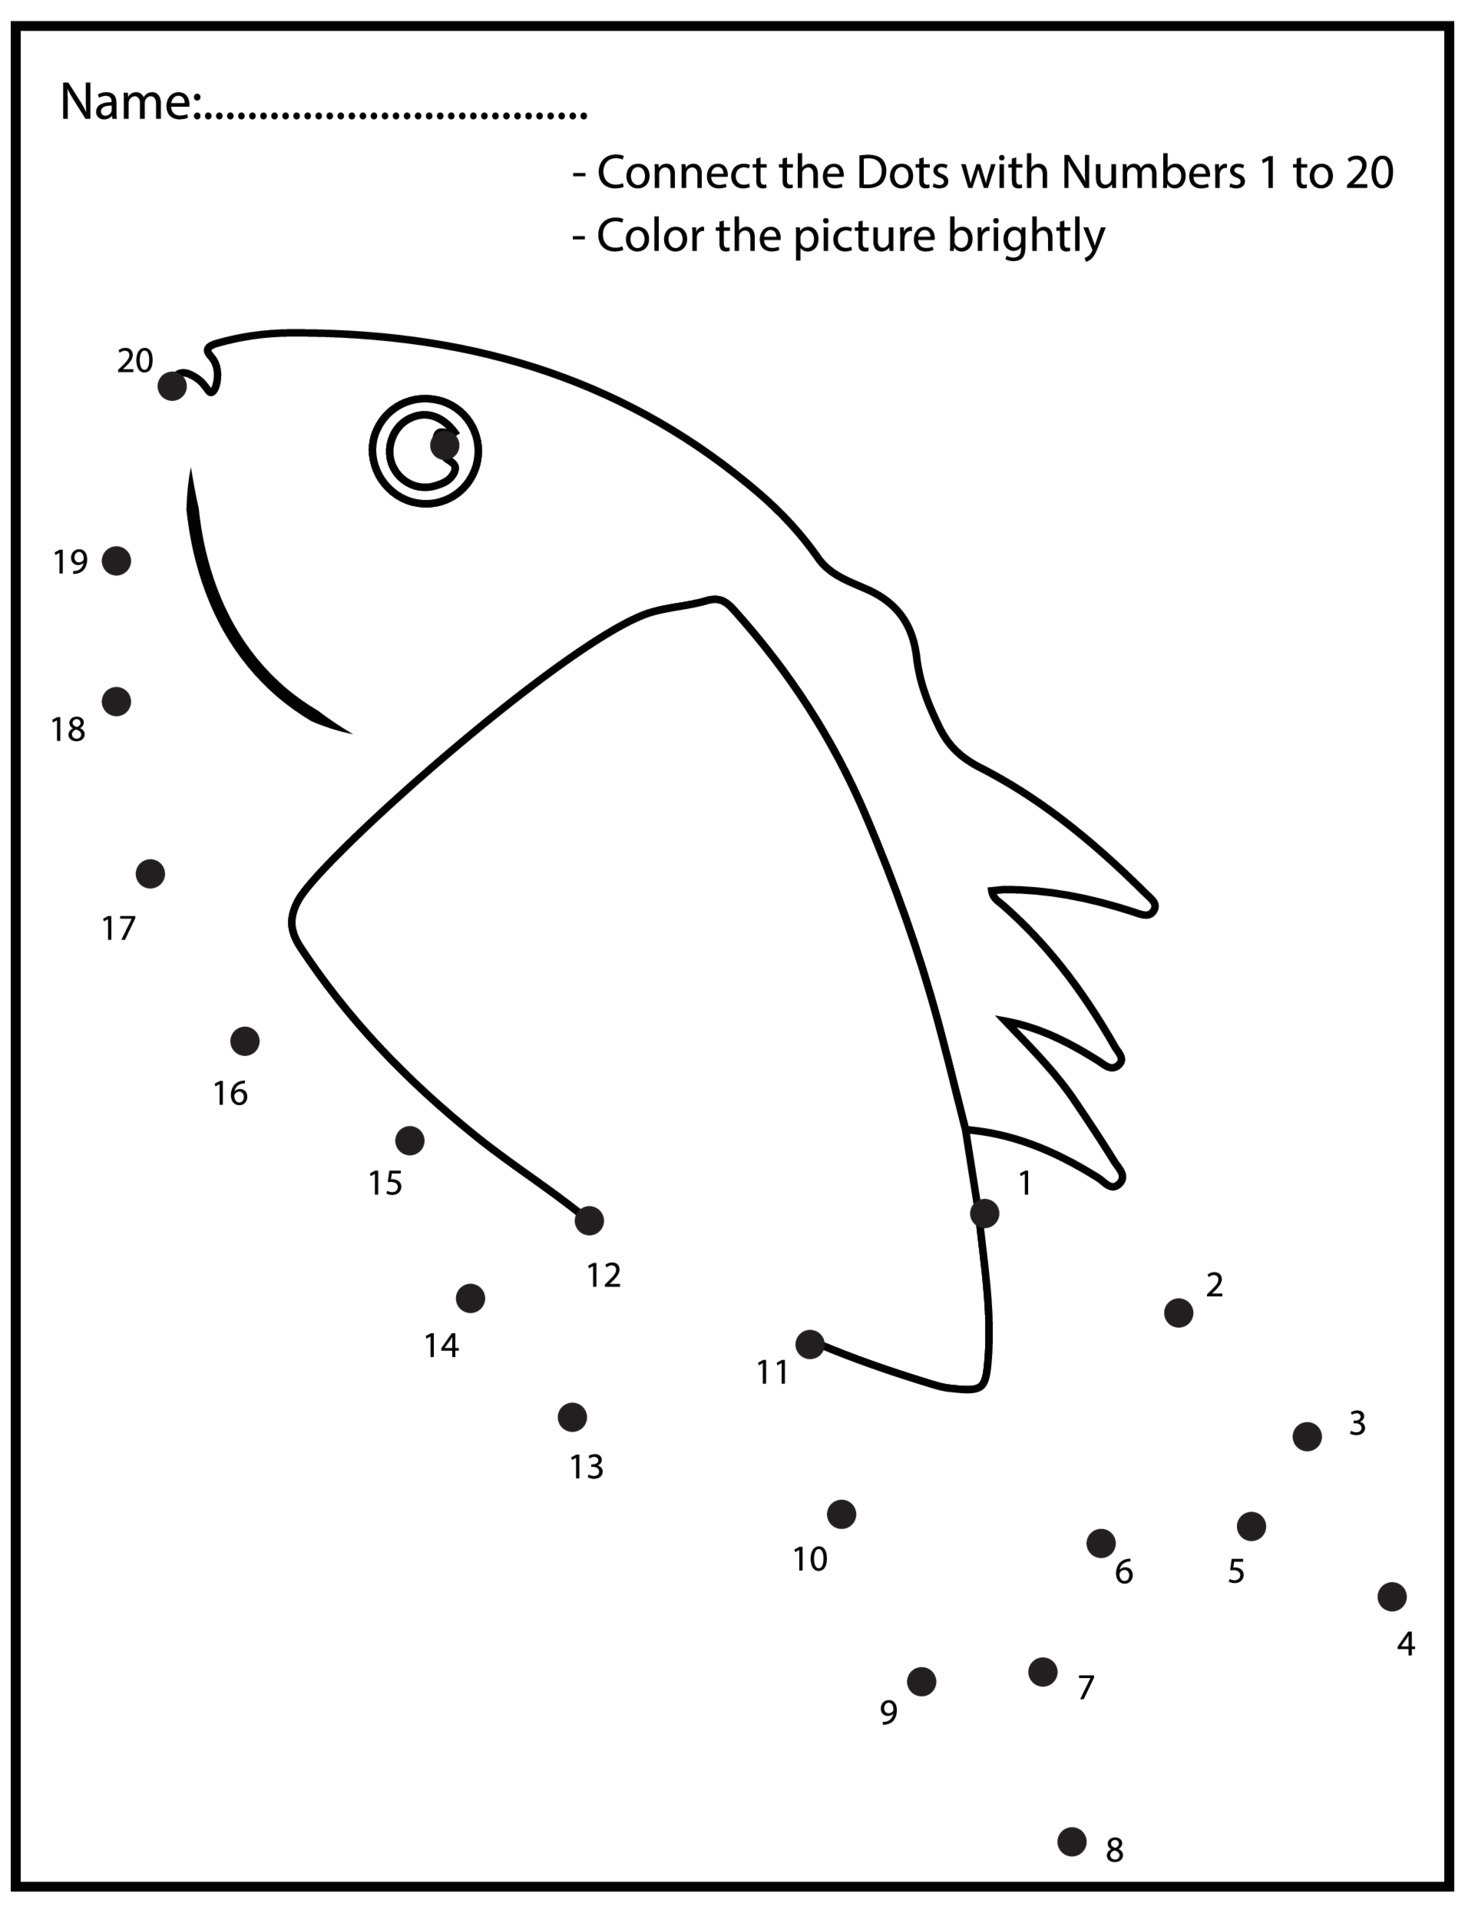 Ligar Os Pontos Por Números Para Desenhar Os Peixes. Jogo